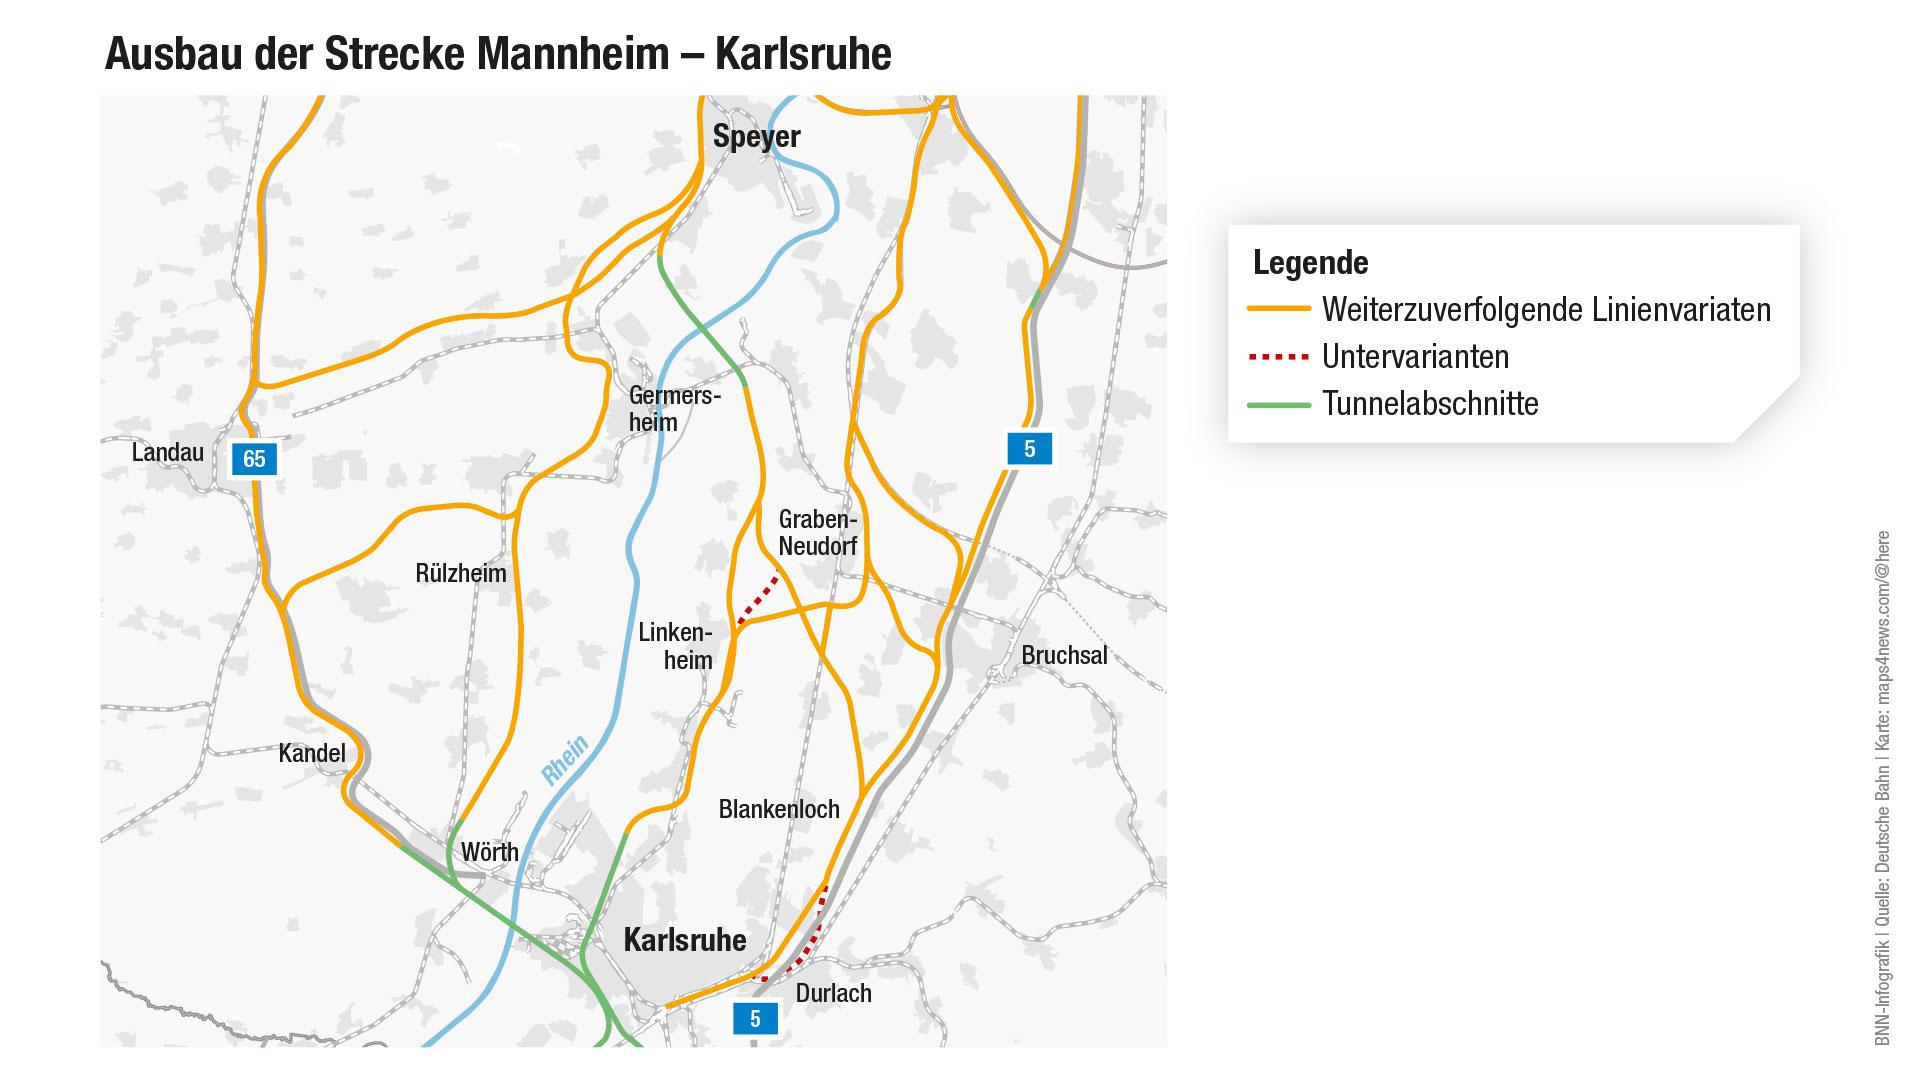 Ausbau der Strecke Mannheim – Karlsruhe